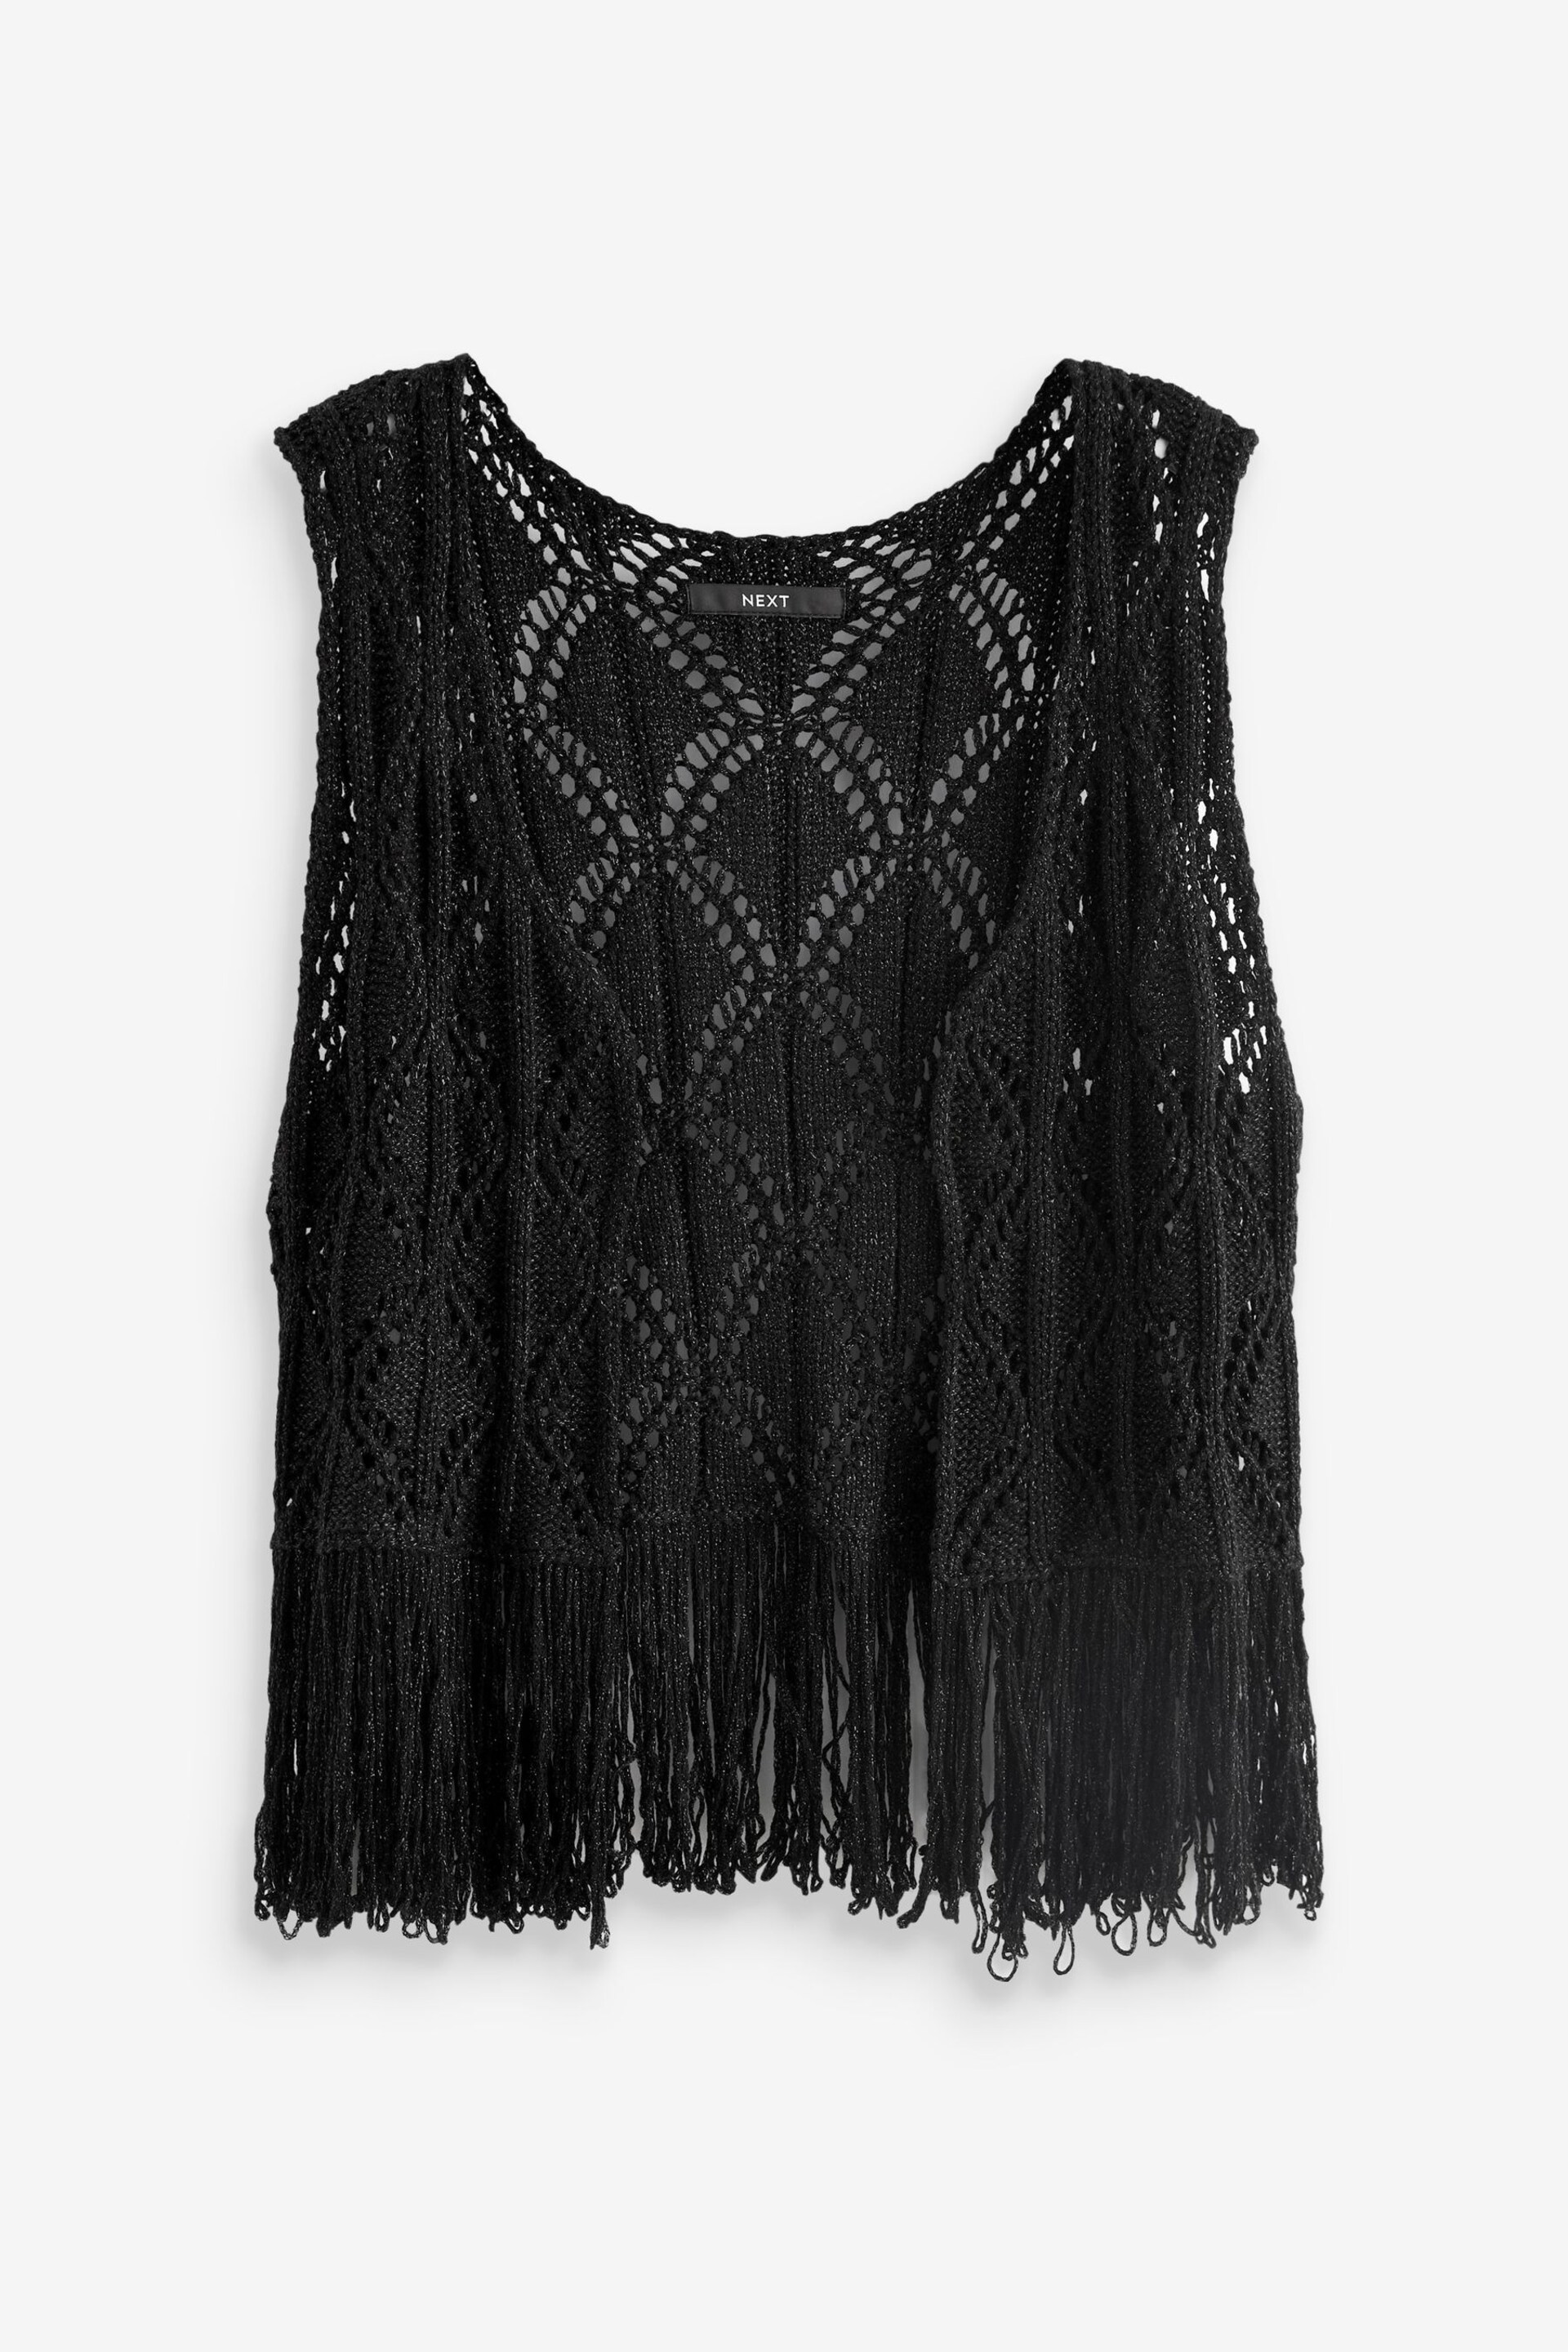 Black Sparkle Crochet Fringed Waistcoat - Image 4 of 5